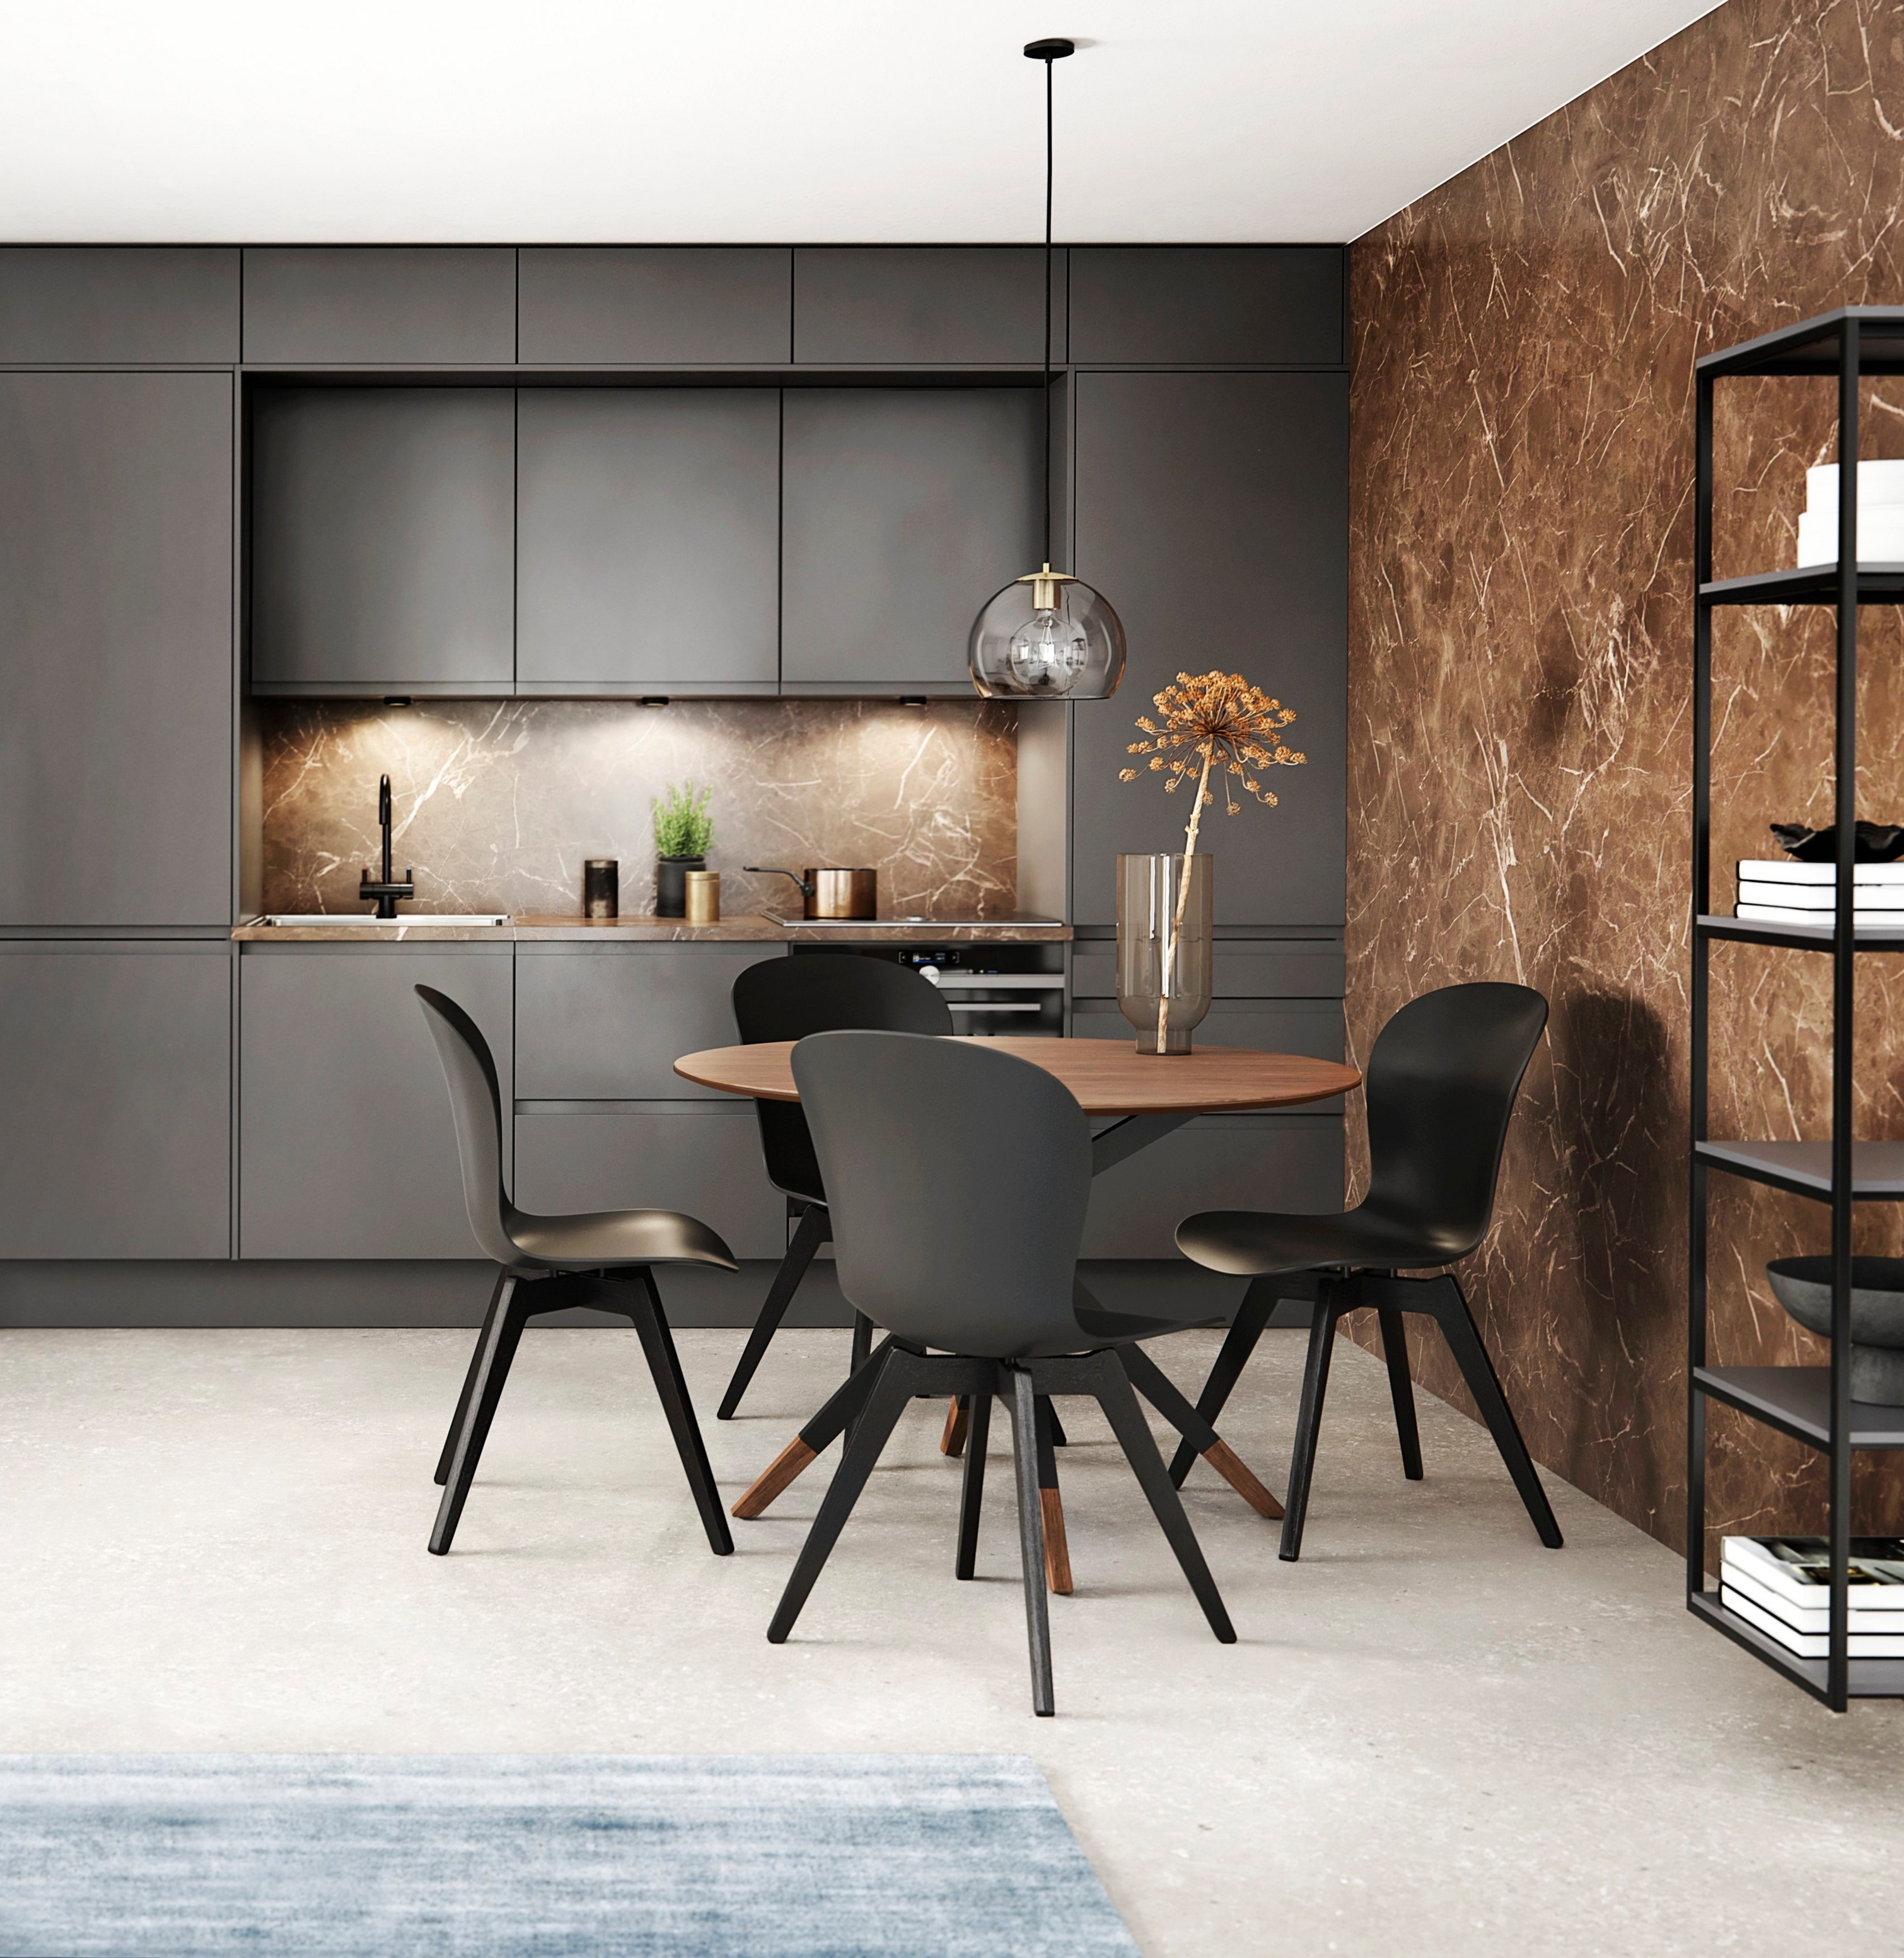 Moderne kjøkken med mørke skap, veggplate i marmor og spiseområde med rundt bord og svarte stoler.